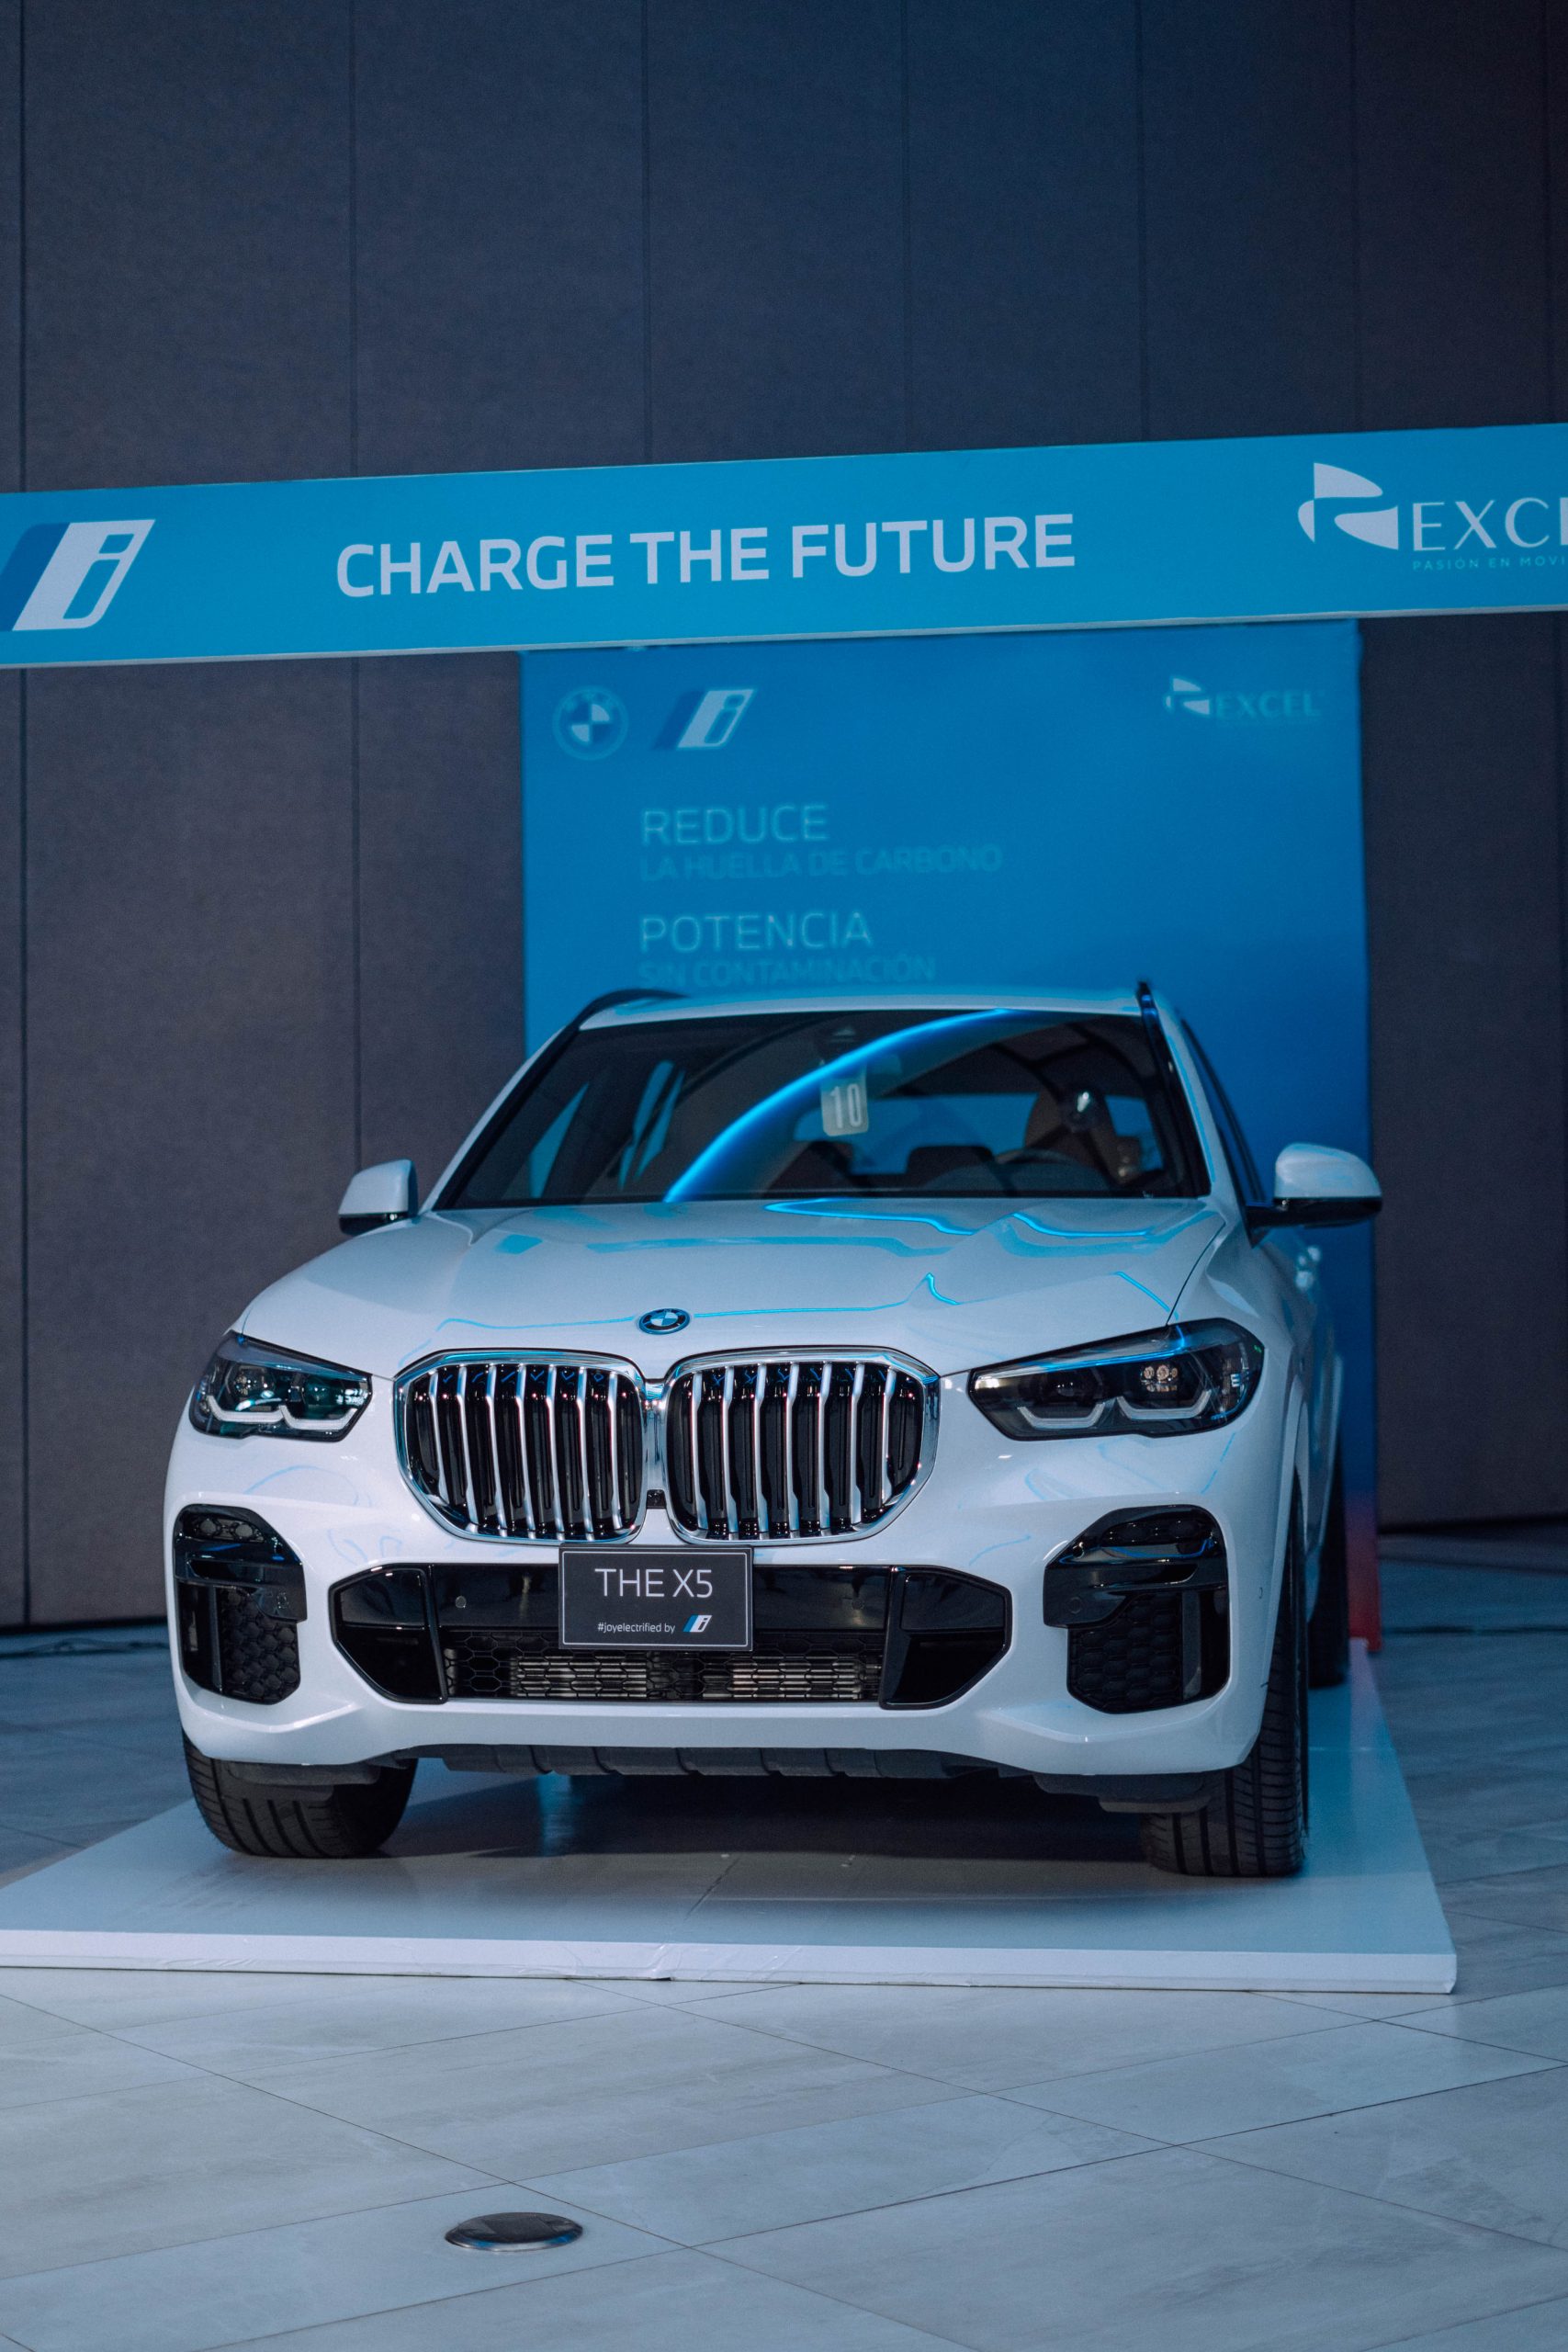 Excel a través de su marca BMW presenta nuevos modelos híbridos enchufables.